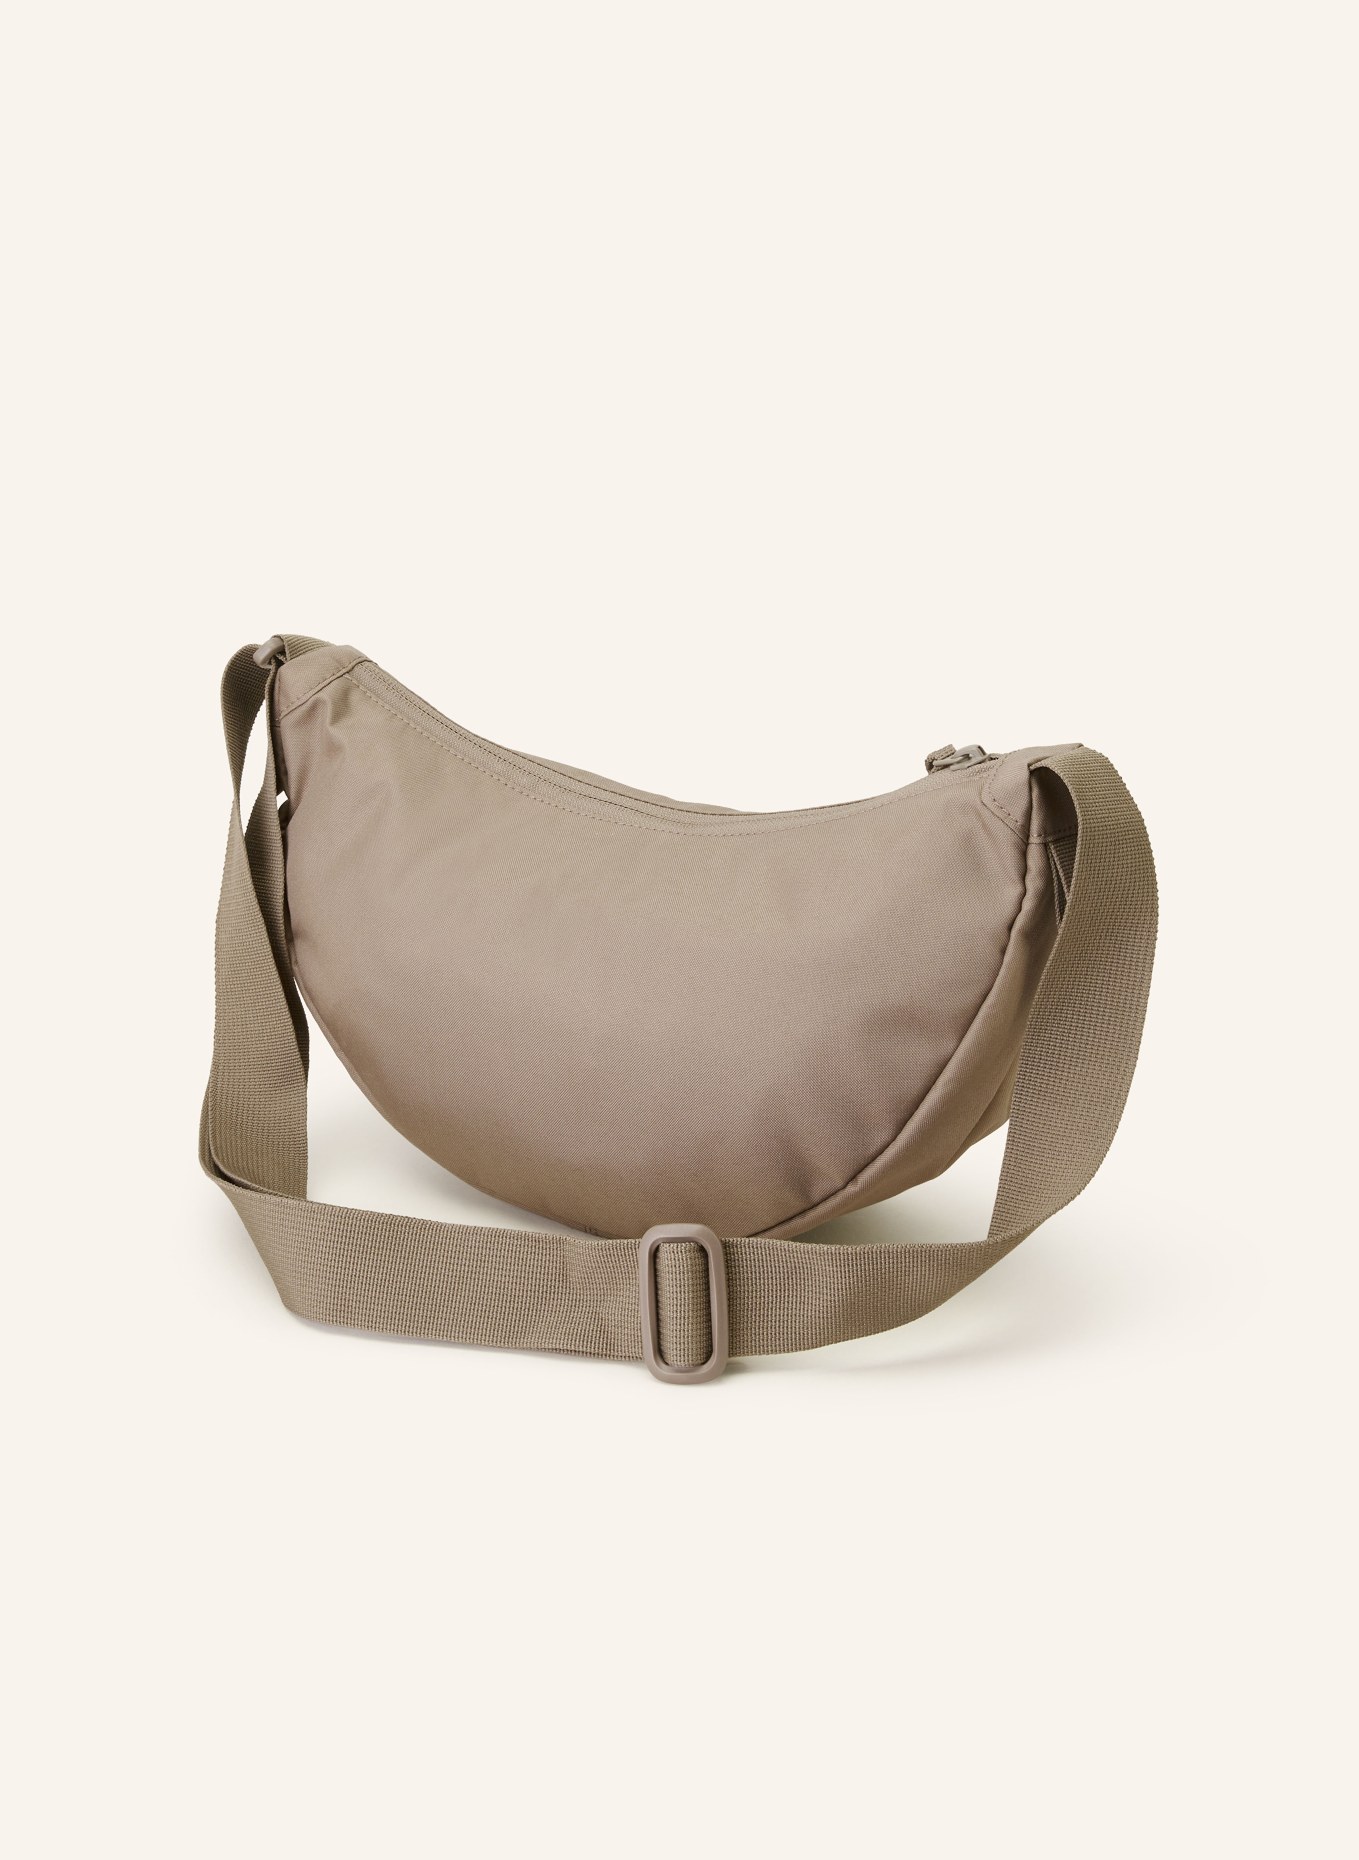 GOT BAG Waist bag MOON SMALL, Color: TAUPE (Image 2)